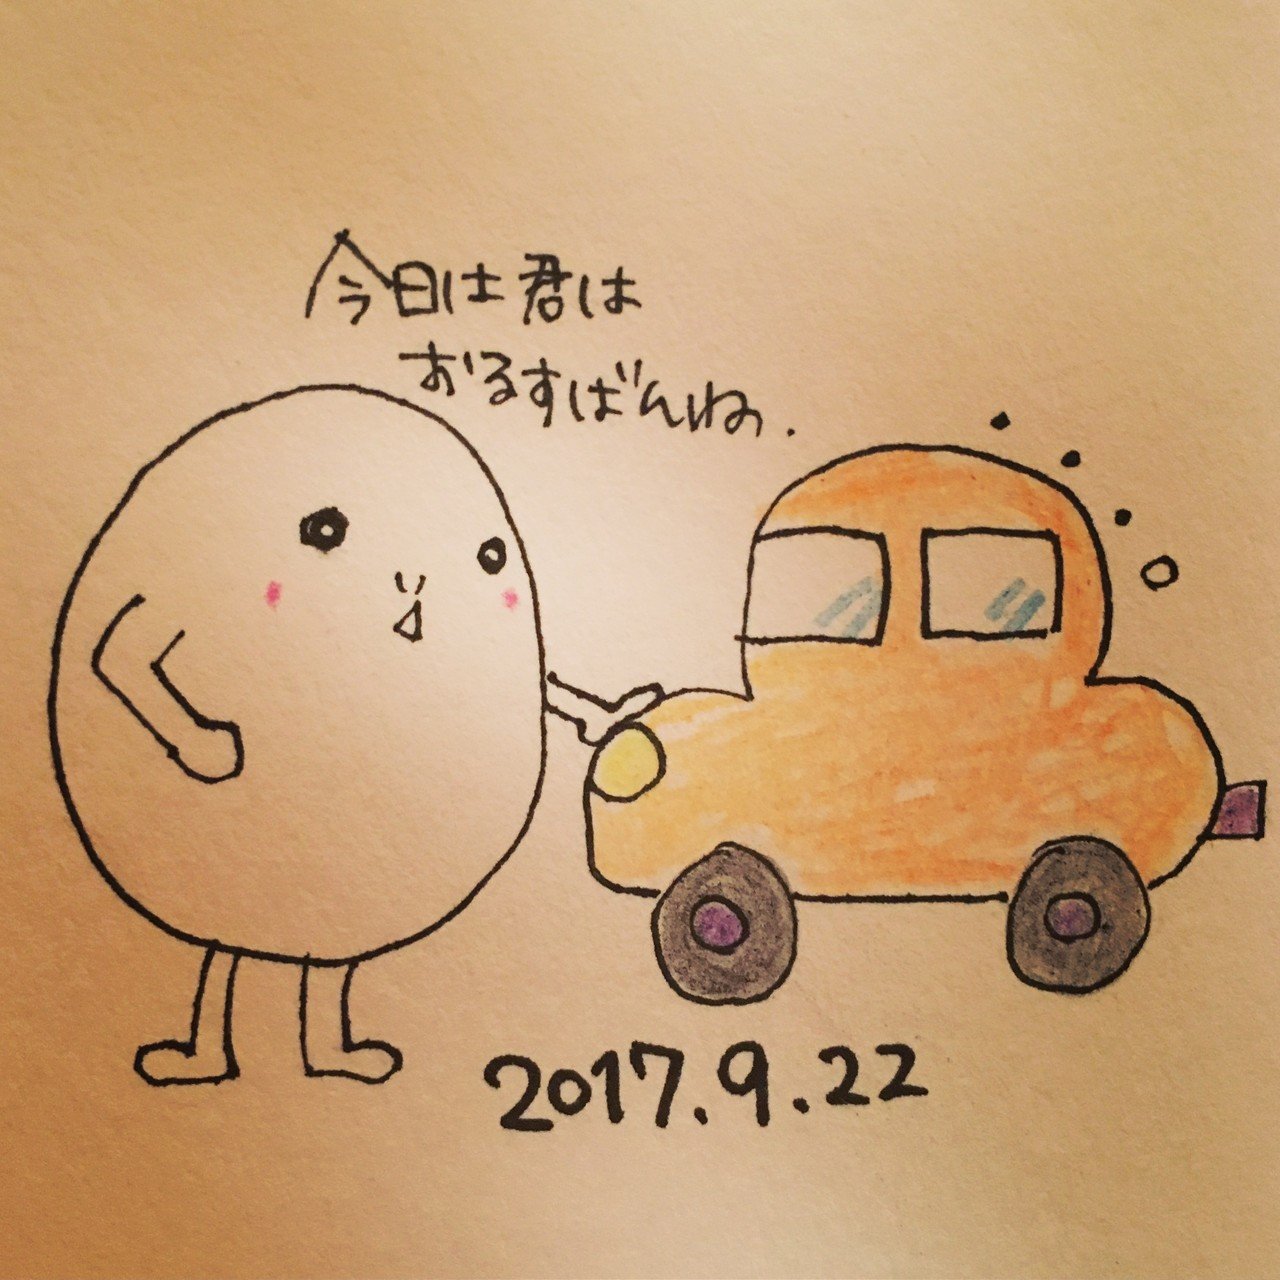 あべちゃんカレンダー 2017 9 21 2017 9 30 Narumi Abe Note